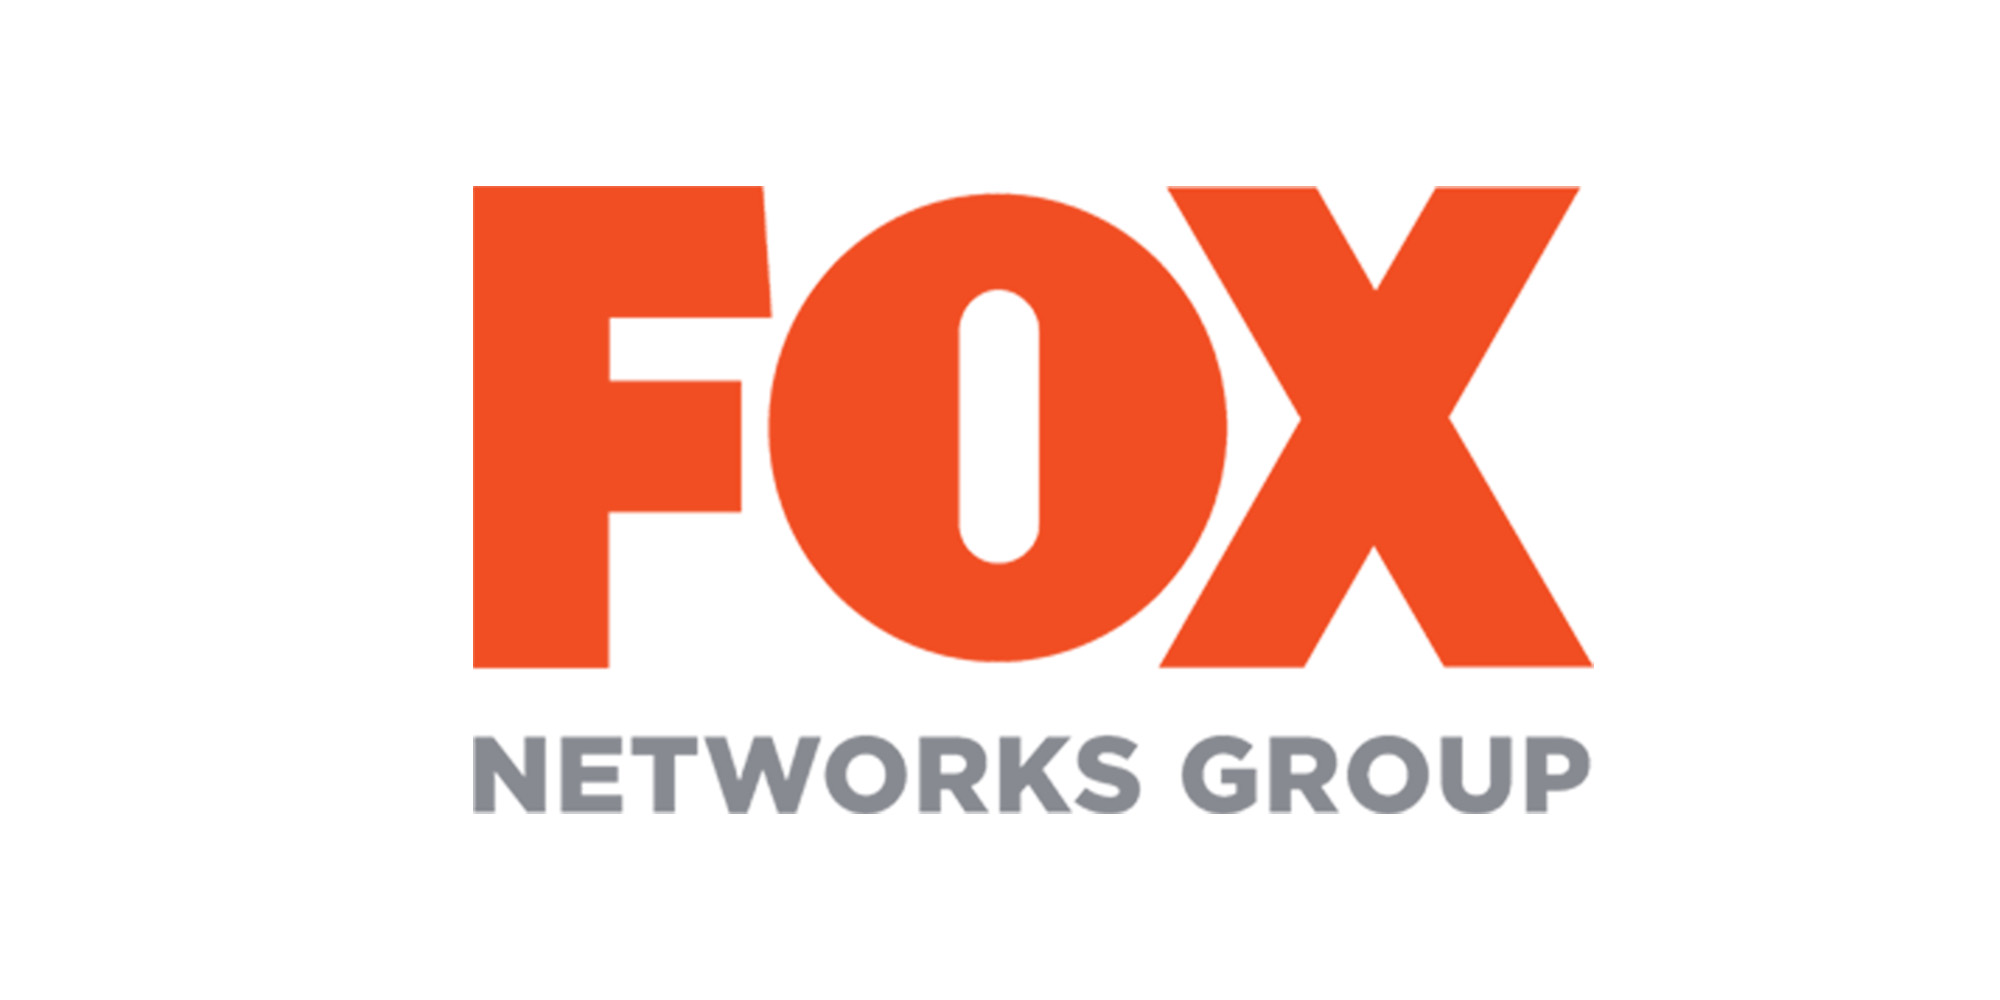 Fox Premium. Fox Premium 1. Fox Premium logo. Fox Телеканал проекты. Fox сеть